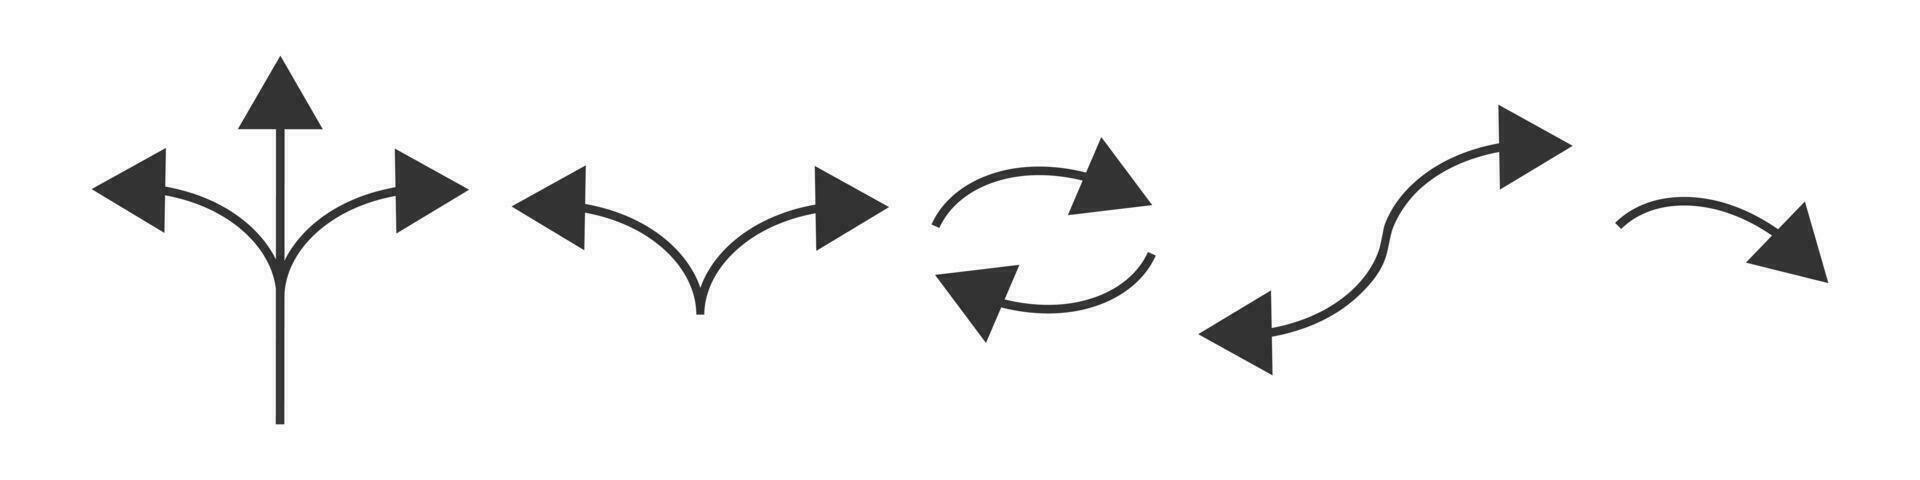 dirección flecha icono colocar. la carretera camino marca símbolo. firmar señalando camino vector. vector